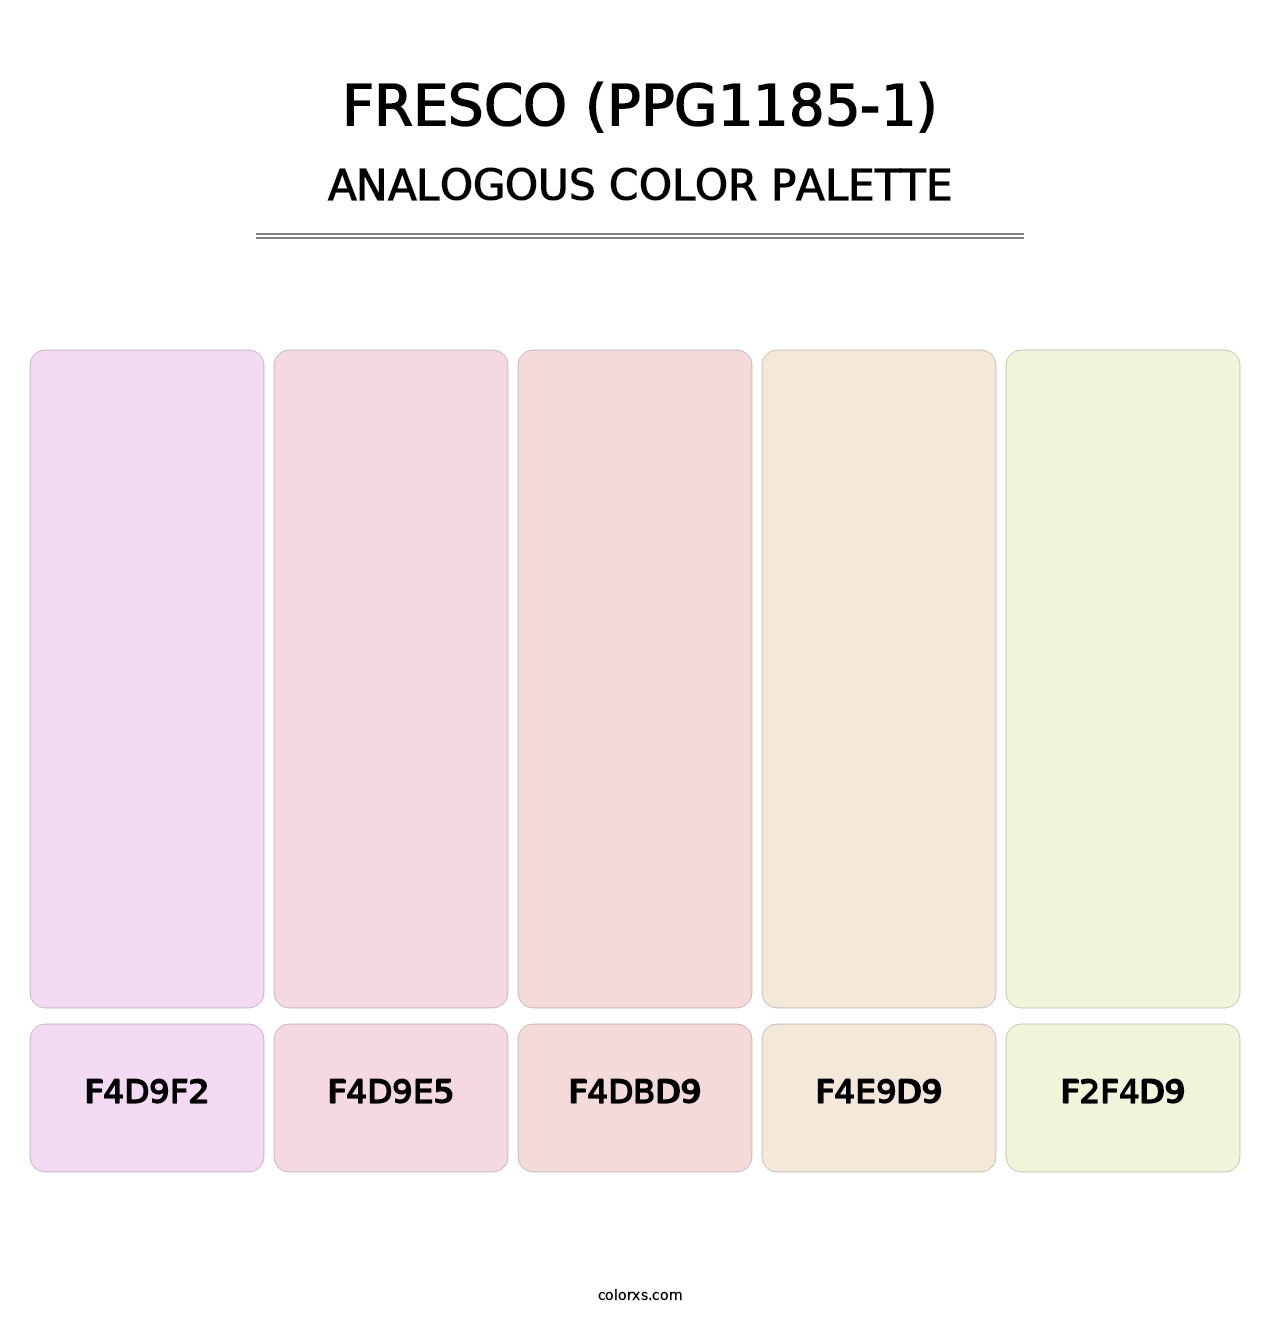 Fresco (PPG1185-1) - Analogous Color Palette